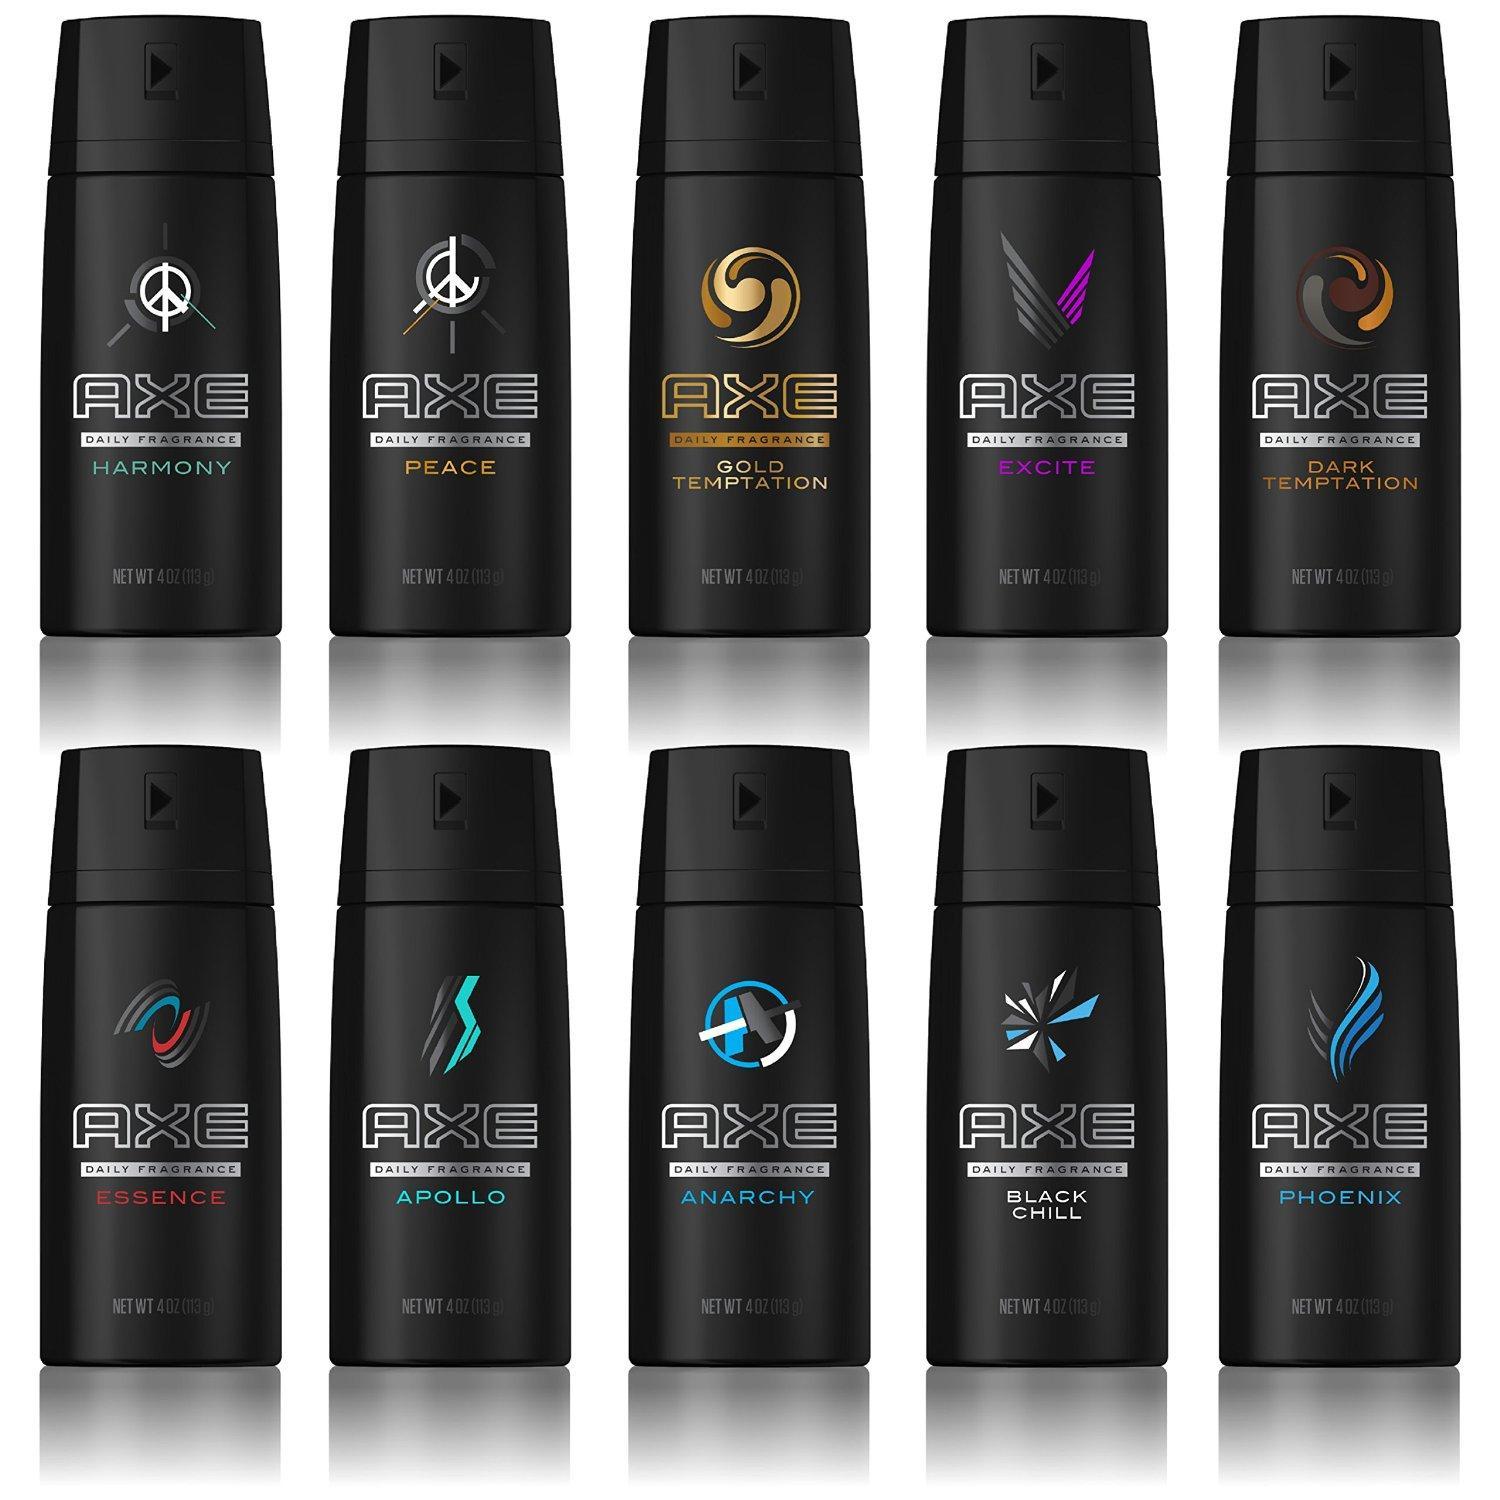 Axe Body Spray Logo - Amazon.com : AXE Body Spray for Men, Excite 4 oz, Twin Pack : Beauty